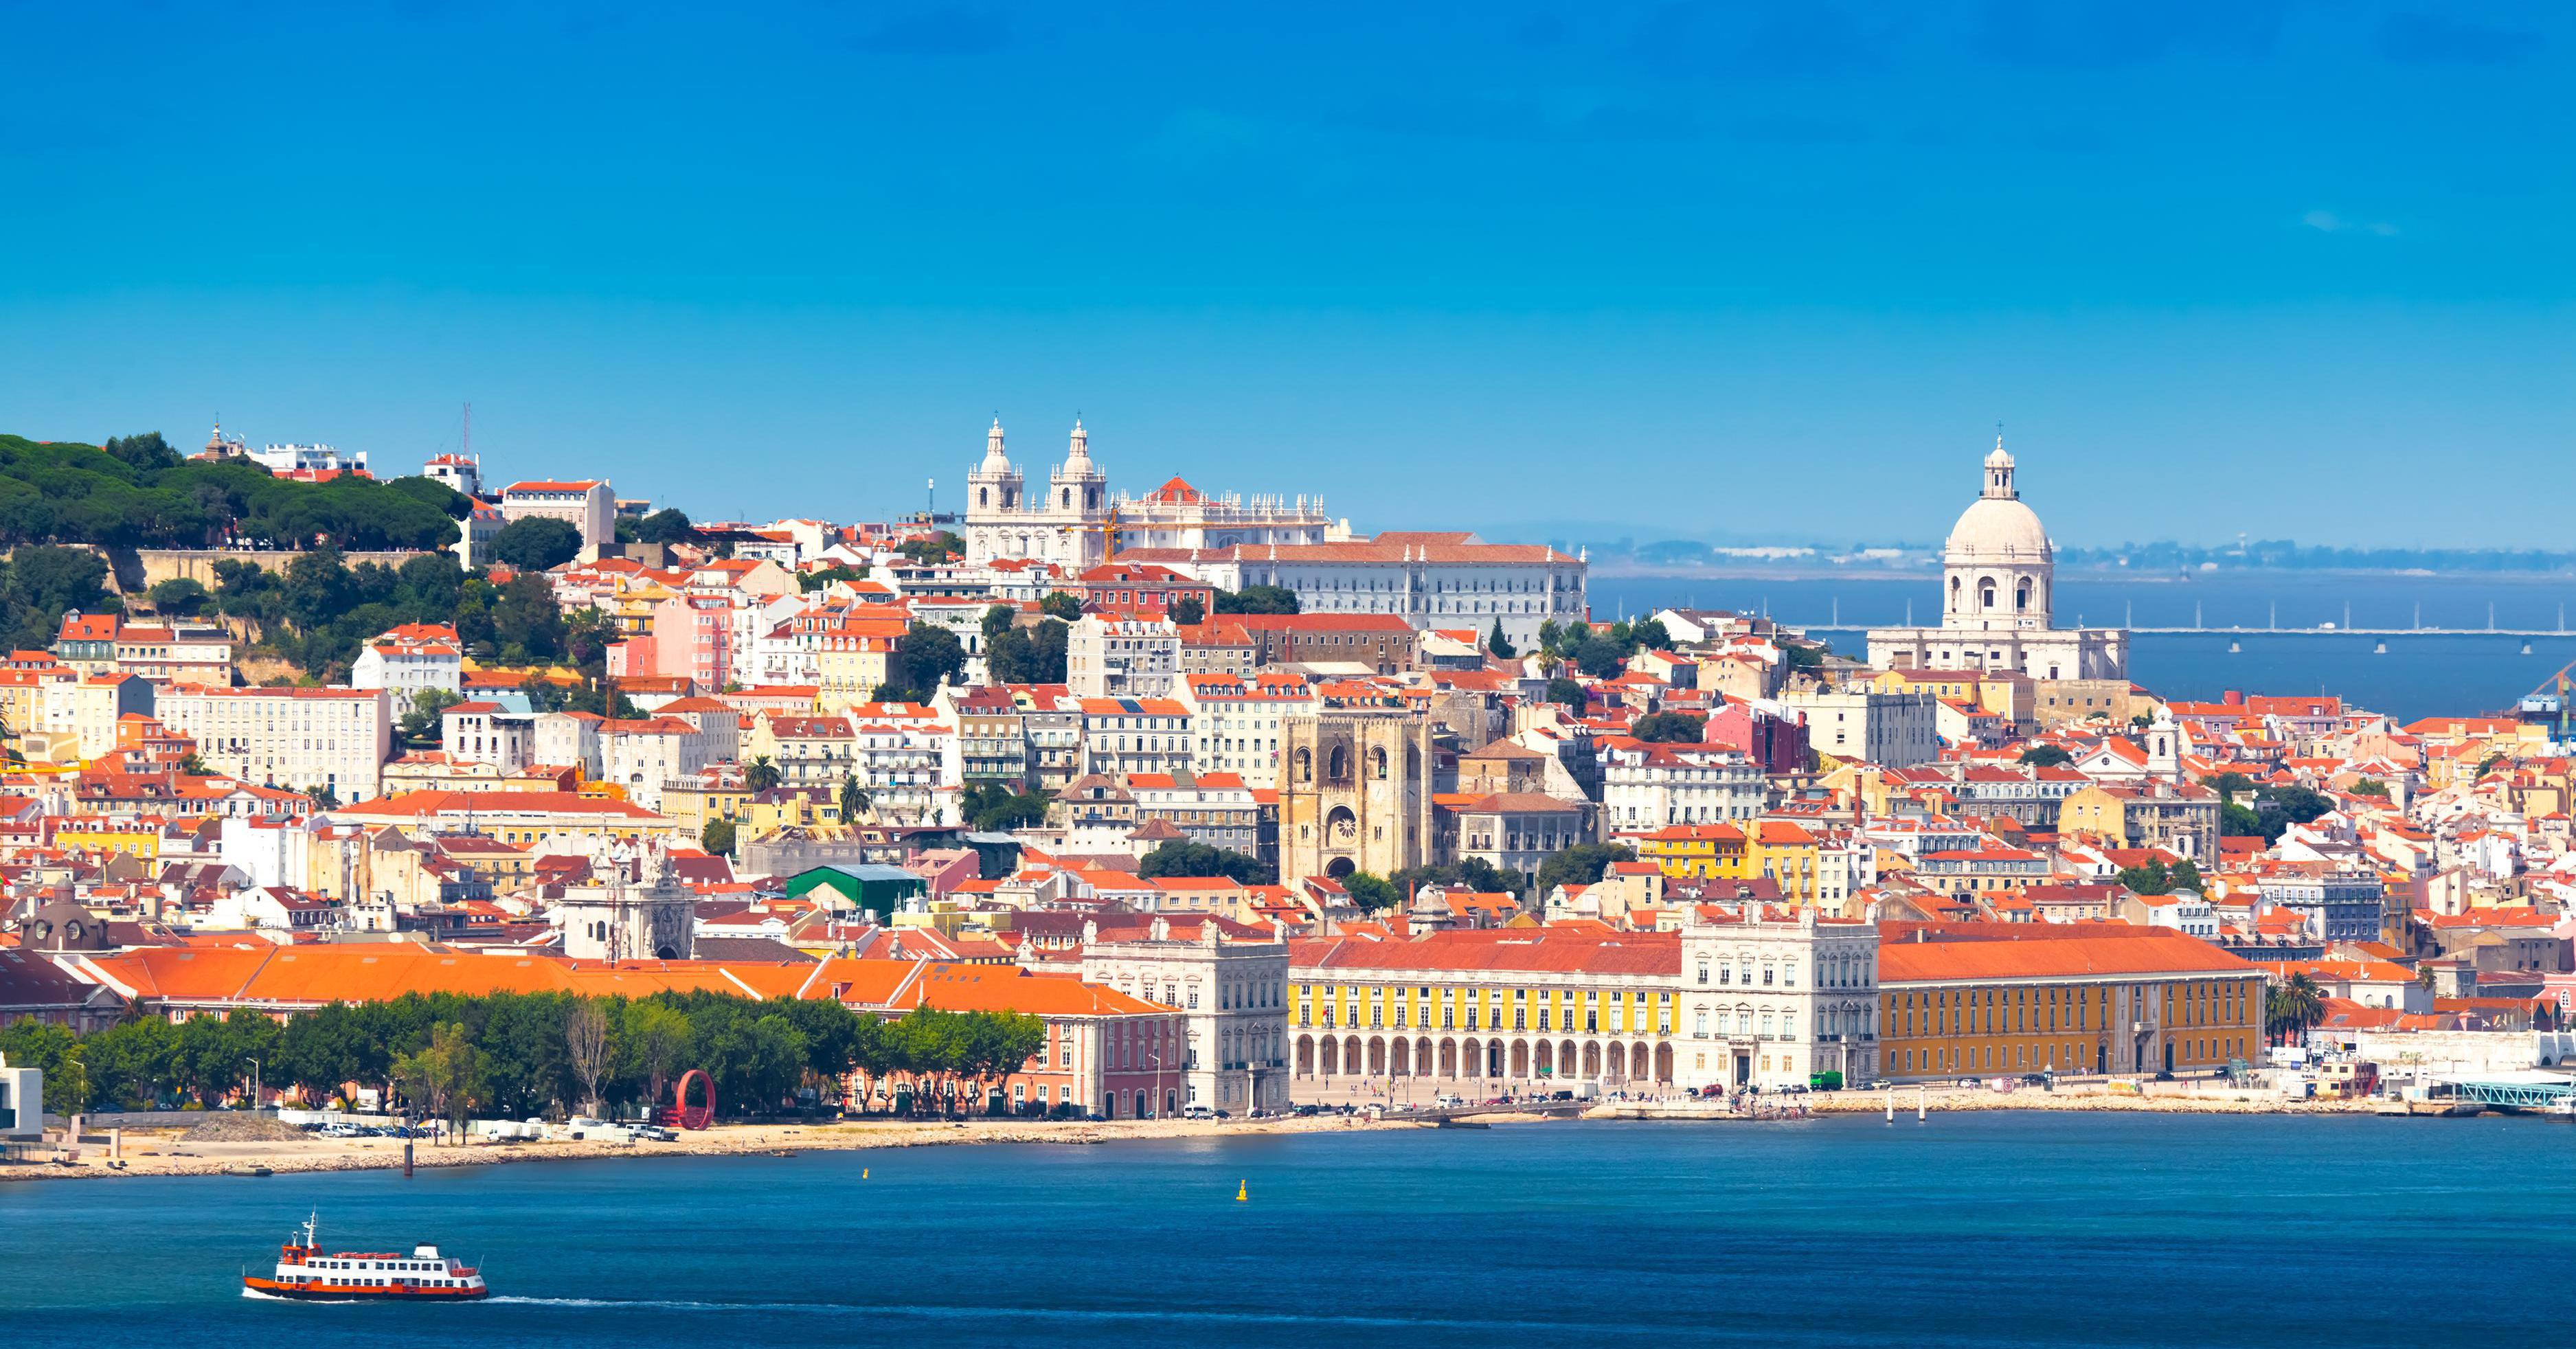 €835 - Португалия в октябре с перелетом и экскурсиями